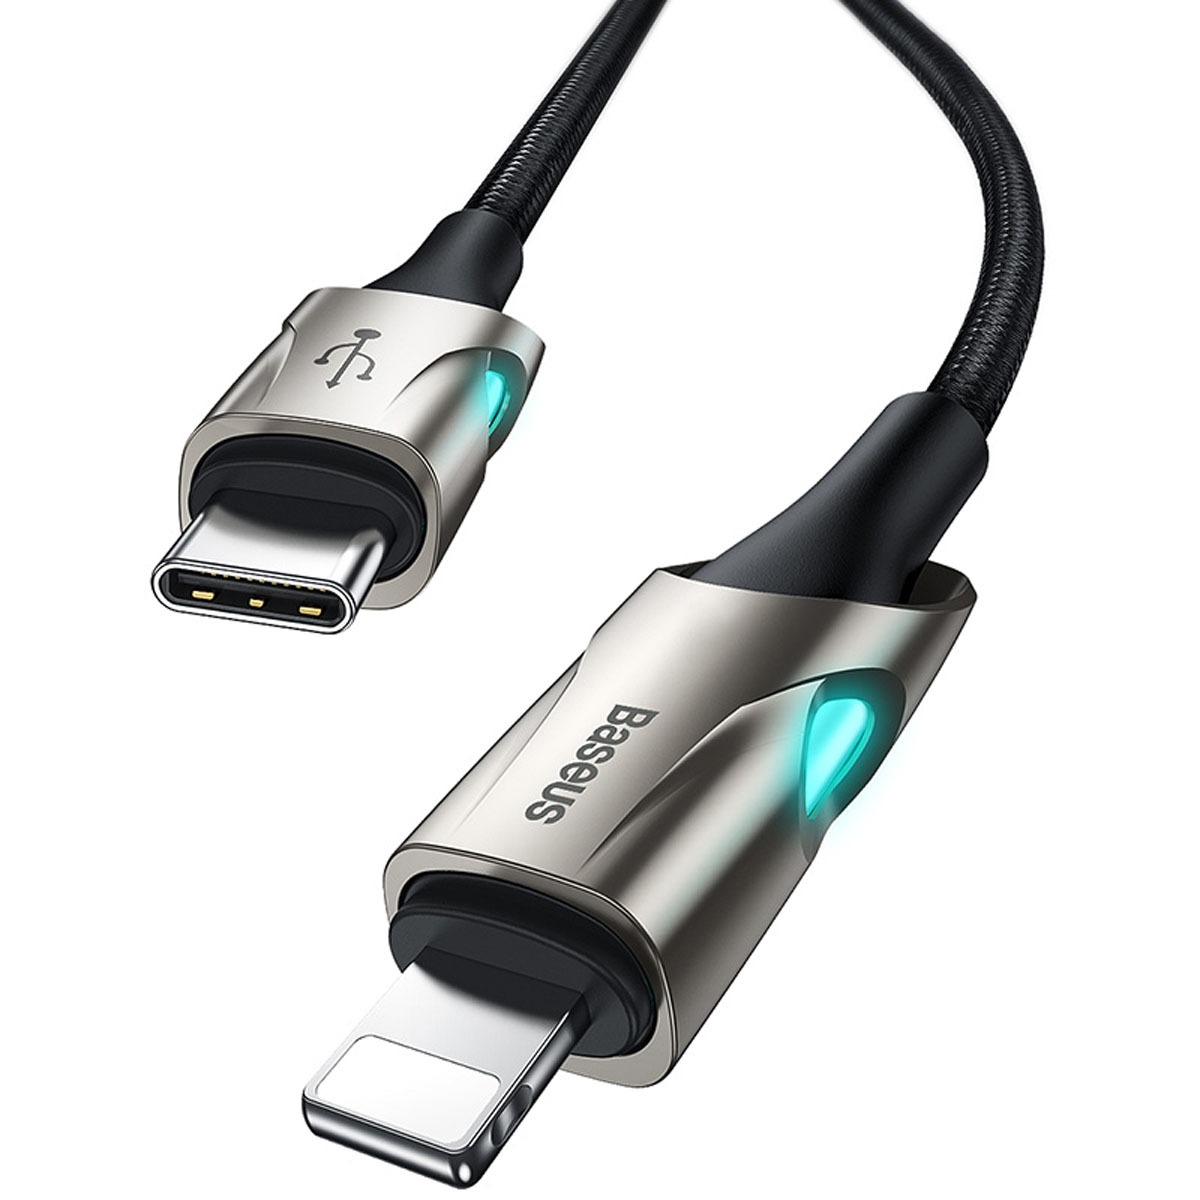 Кабель BASEUS Fish Eye Cable CATLYY-01 USB Type C на APPLE Lightning 8 pin, 18W, длина 1 метр, цвет черный